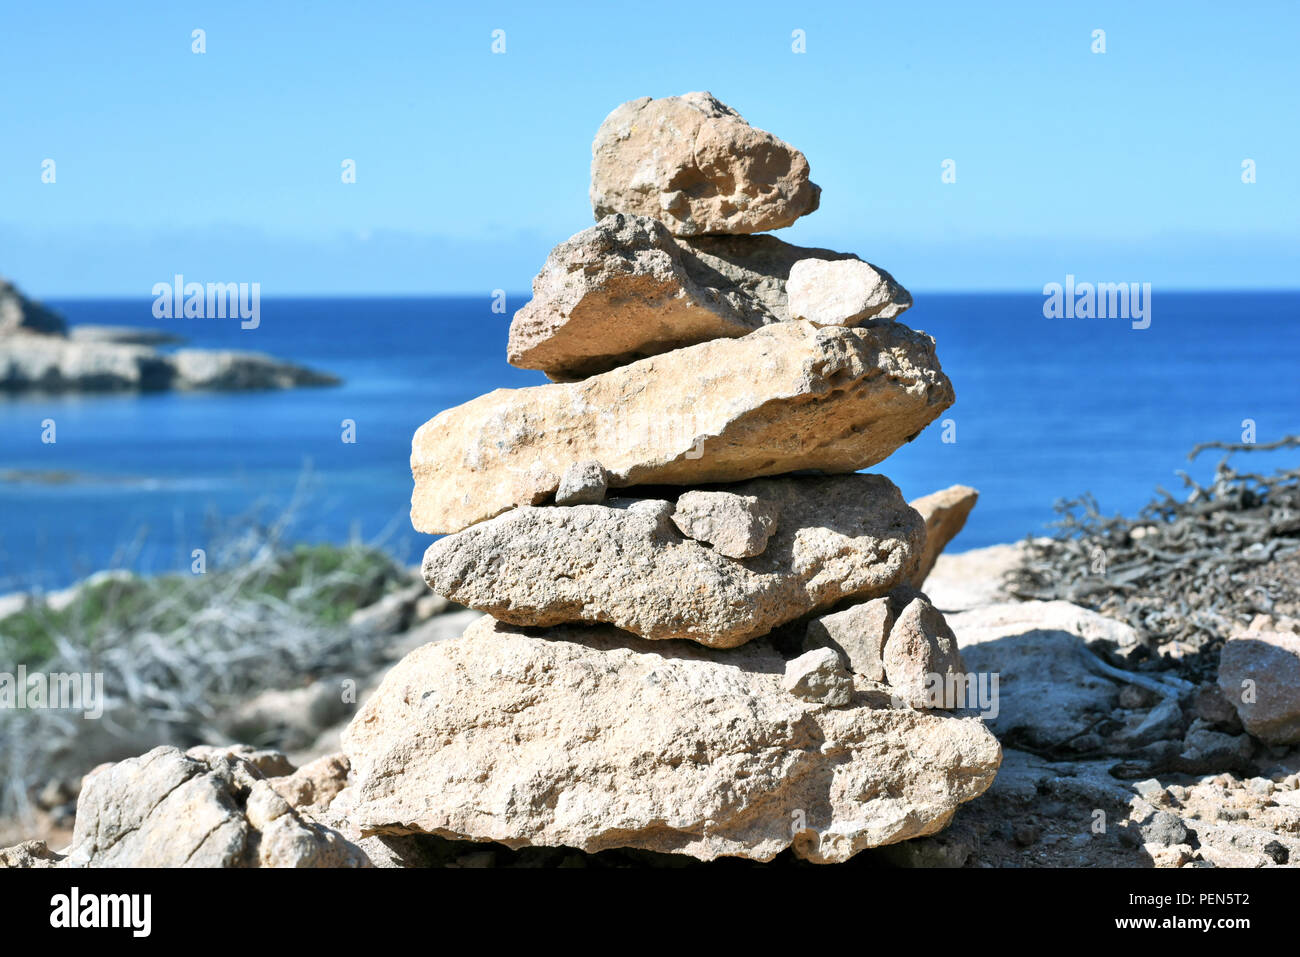 Piedras apiladas o zen stone pila sobre una costa alta con vistas al mar. Foto de stock